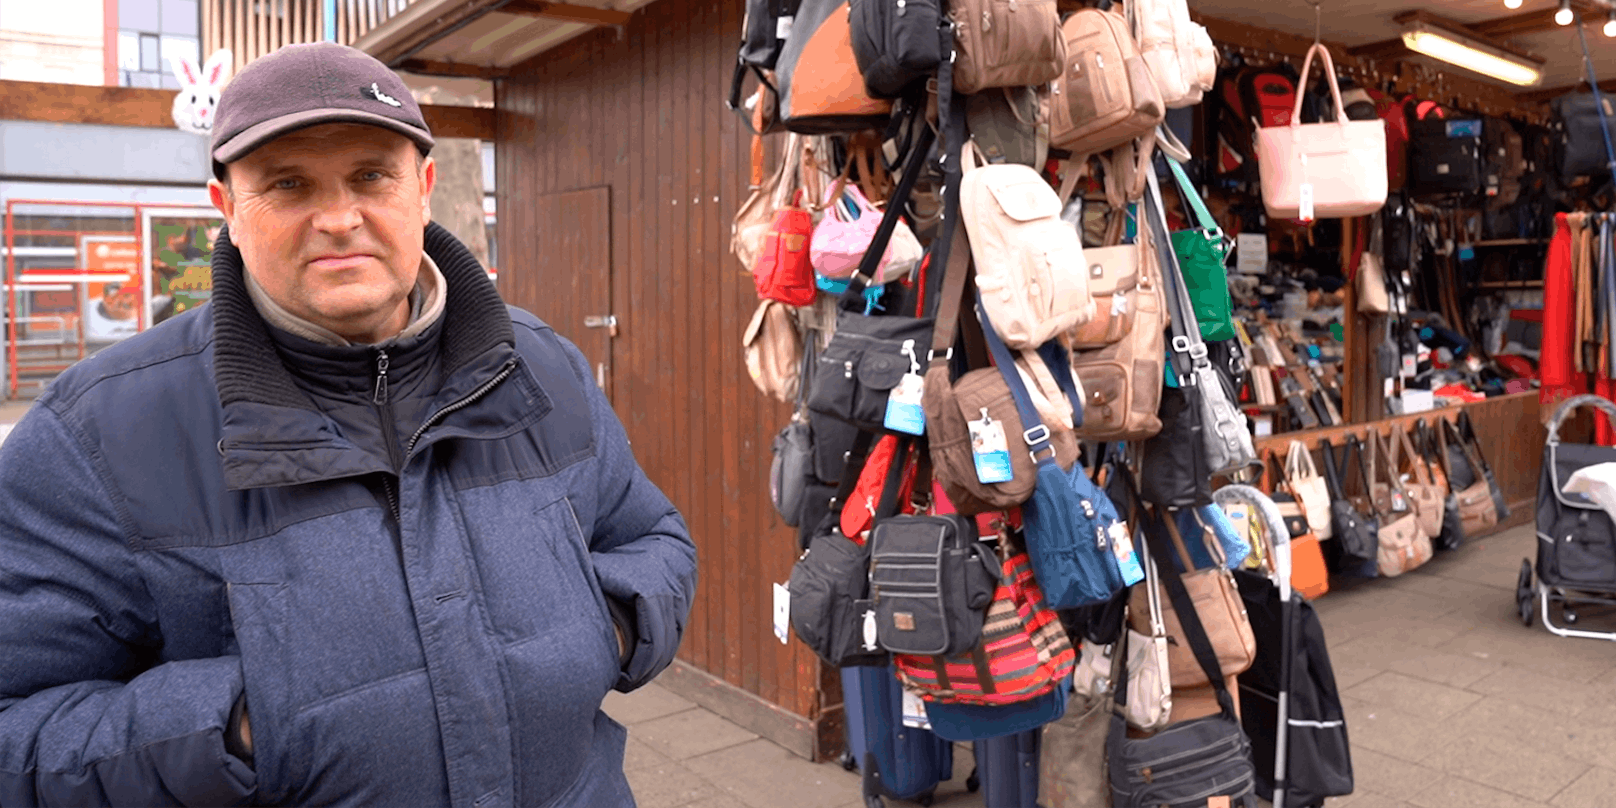 Vasile (53) betreibt einen Lederwarenstand vor dem Bahnhof Wien Floridsdorf.